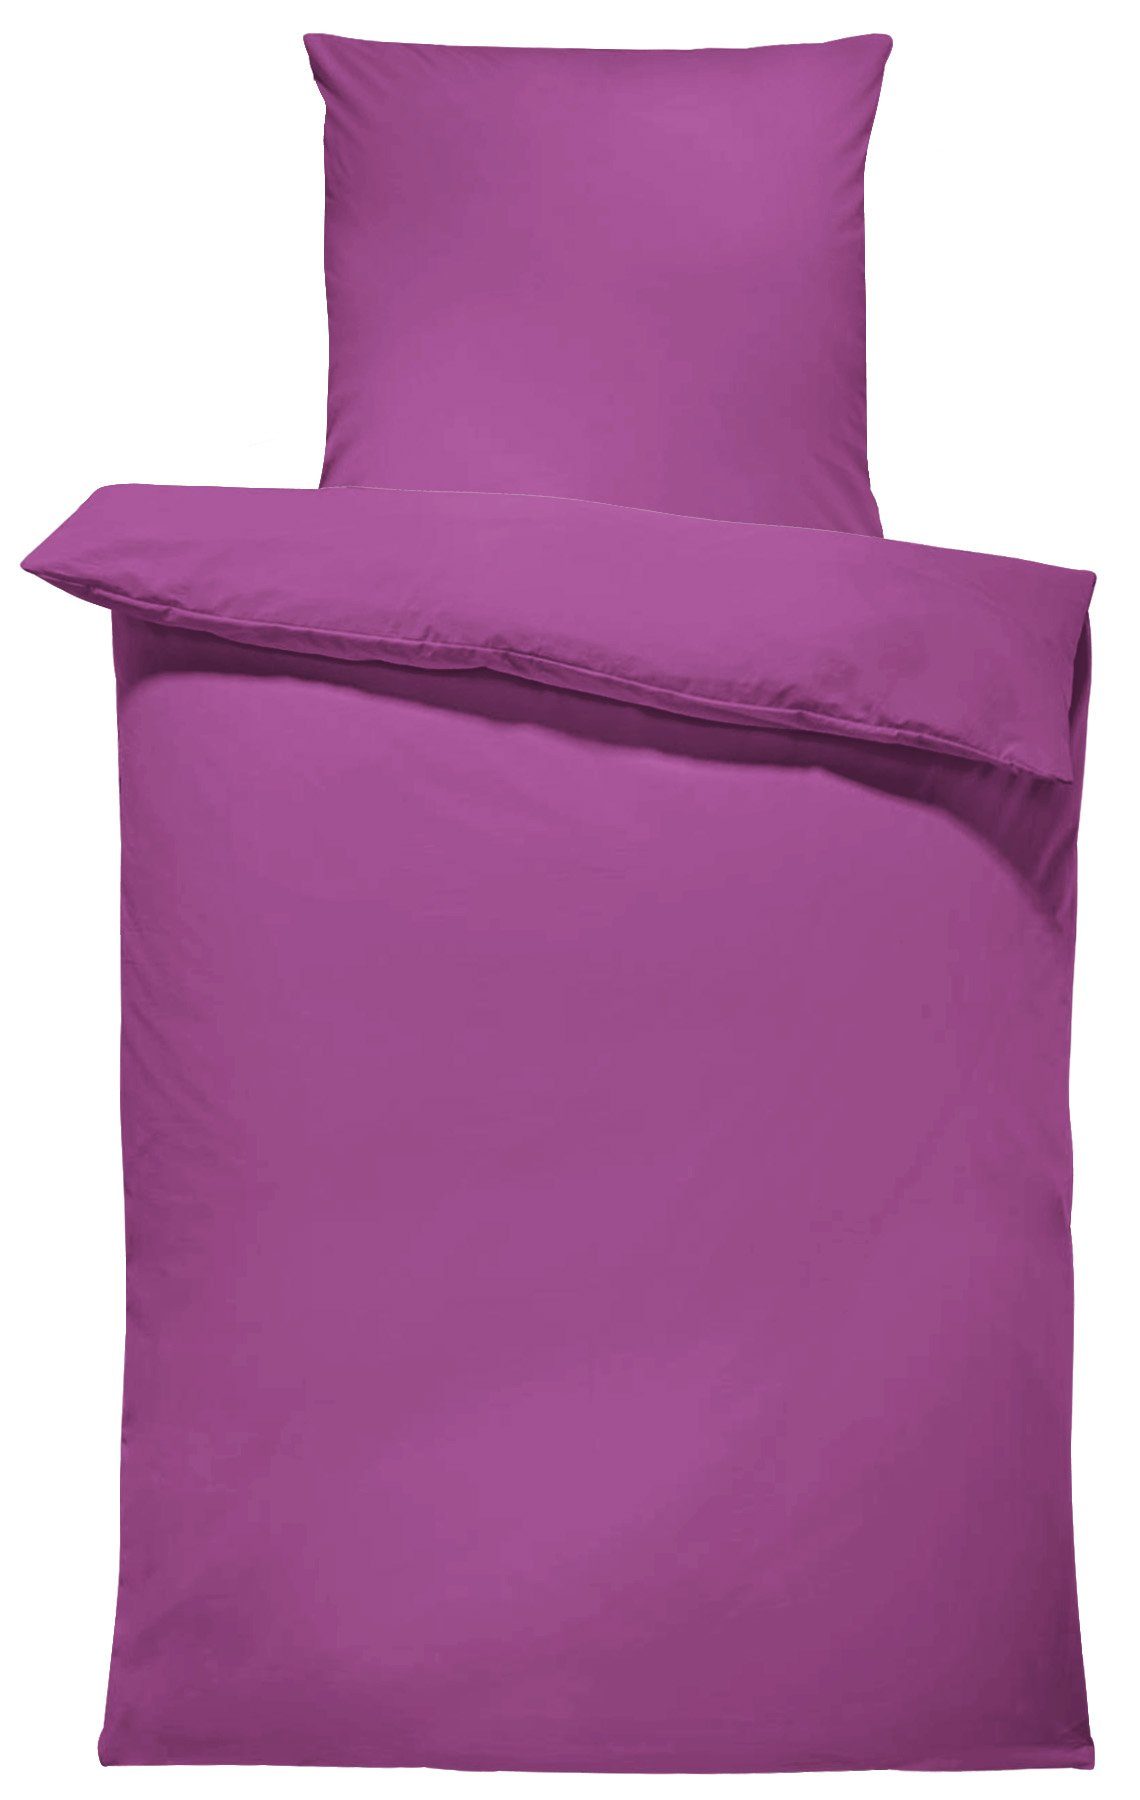 Bettwäsche Unifarben Einfarbig, One Home, Renforcé, 2 teilig, Baumwolle mit Reißverschluss, Übergröße lila | Bettwäsche-Sets